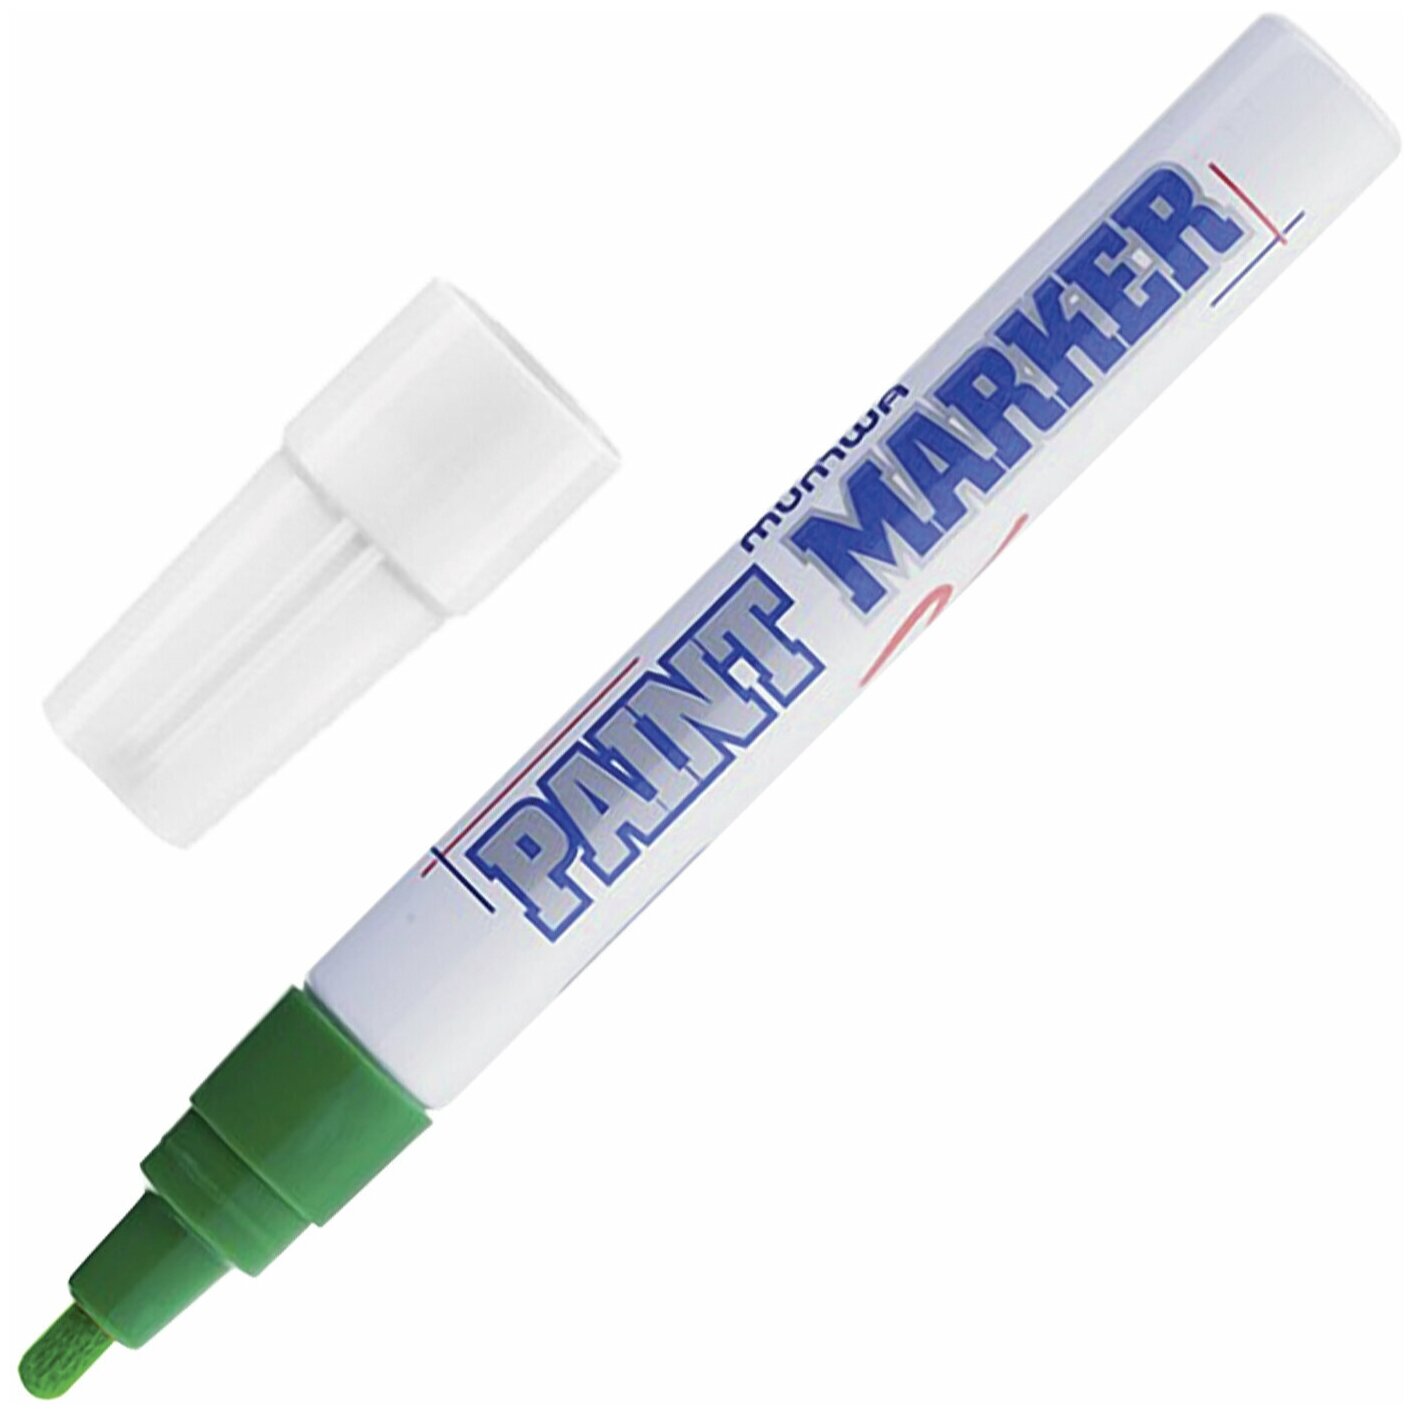 Маркер-краска лаковый (paint marker) MUNHWA 4 мм зеленый нитро-основа алюминиевый корпус PM-04 - 1 шт.